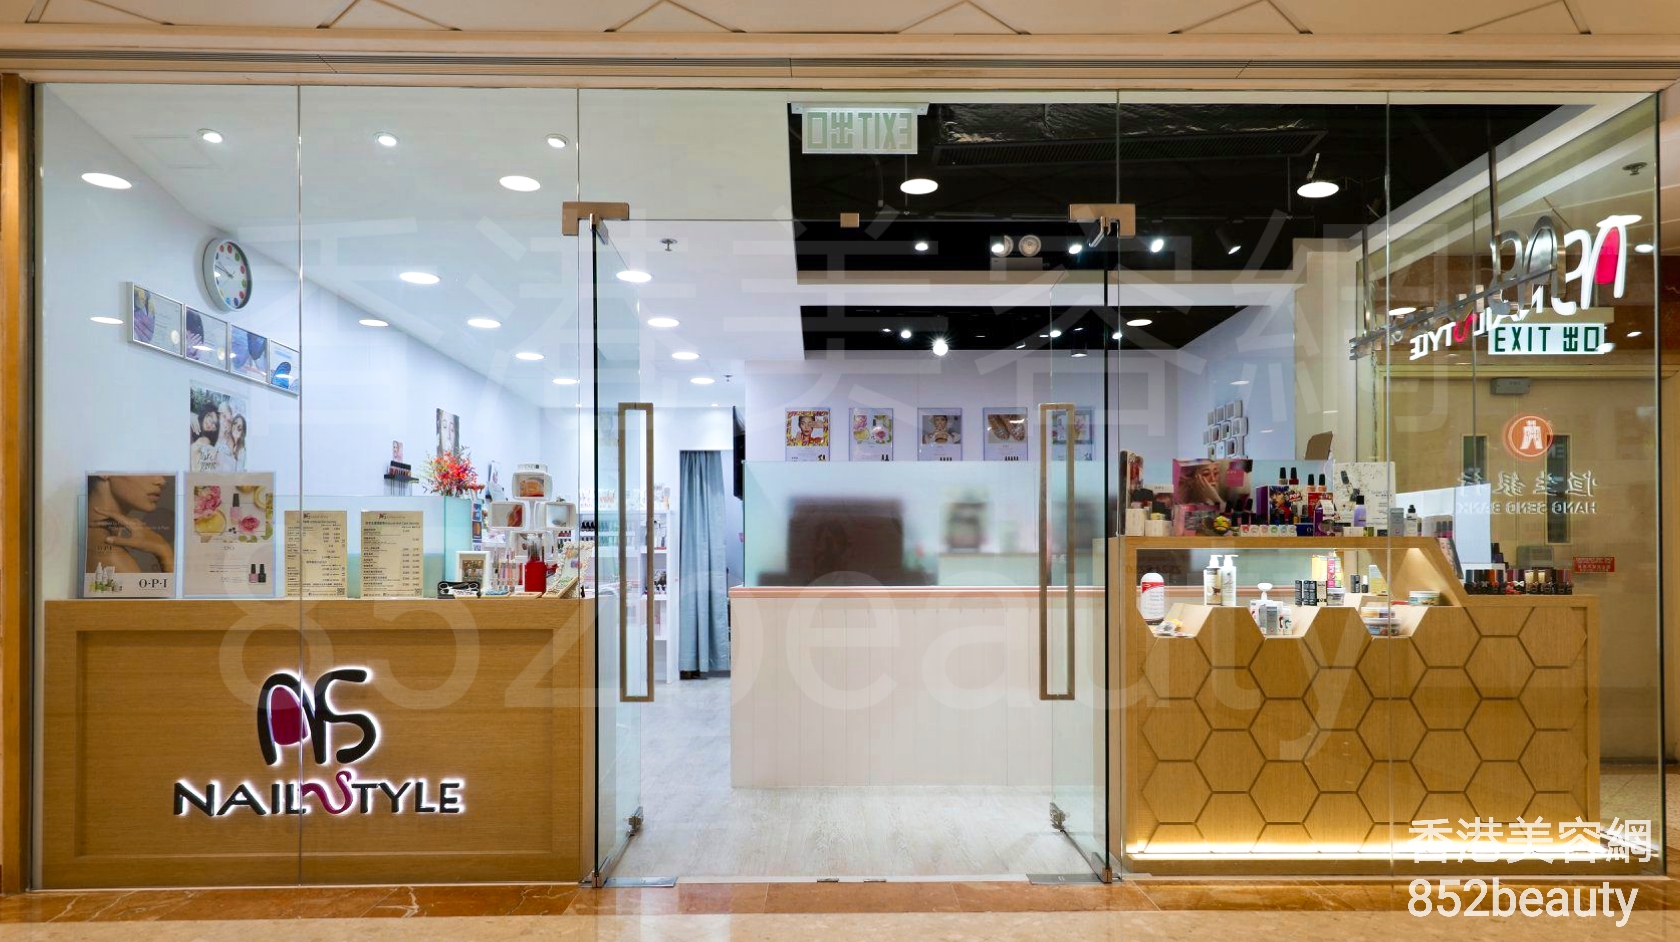 香港美容網 Hong Kong Beauty Salon 美容院 / 美容師: NAIL STYLE (馬鞍山廣場分店)